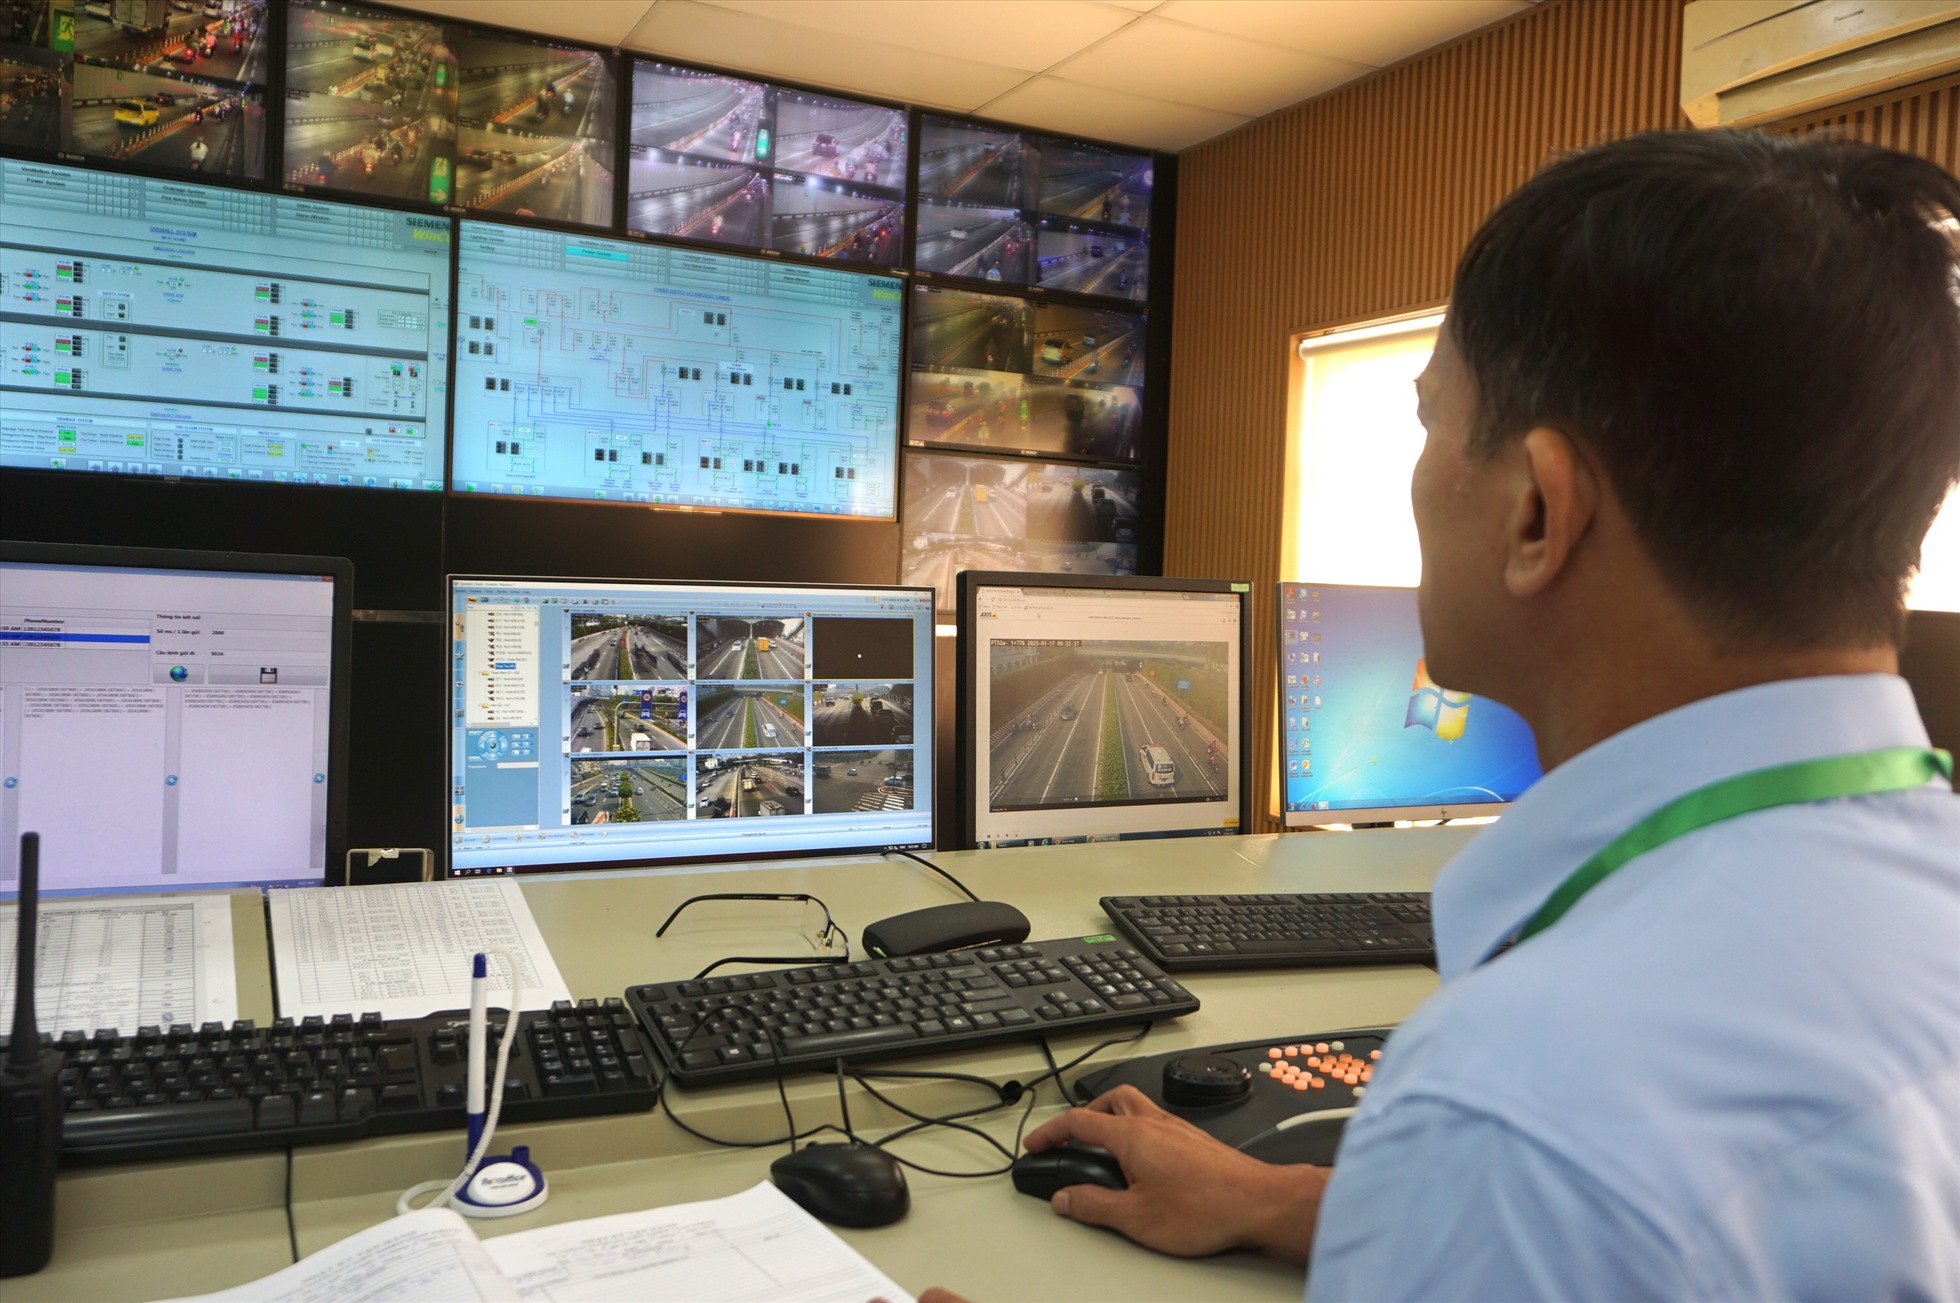 Thông qua nhiều màn hình, nhân viên vận hành trực 24/24 giờ sẽ ghi nhận kịp thời tình hình giao thông như ùn tắc, tai nạn, sự cố để thông tin kịp thời cho CSGT, thanh tra giao thông phối hợp xử lý.